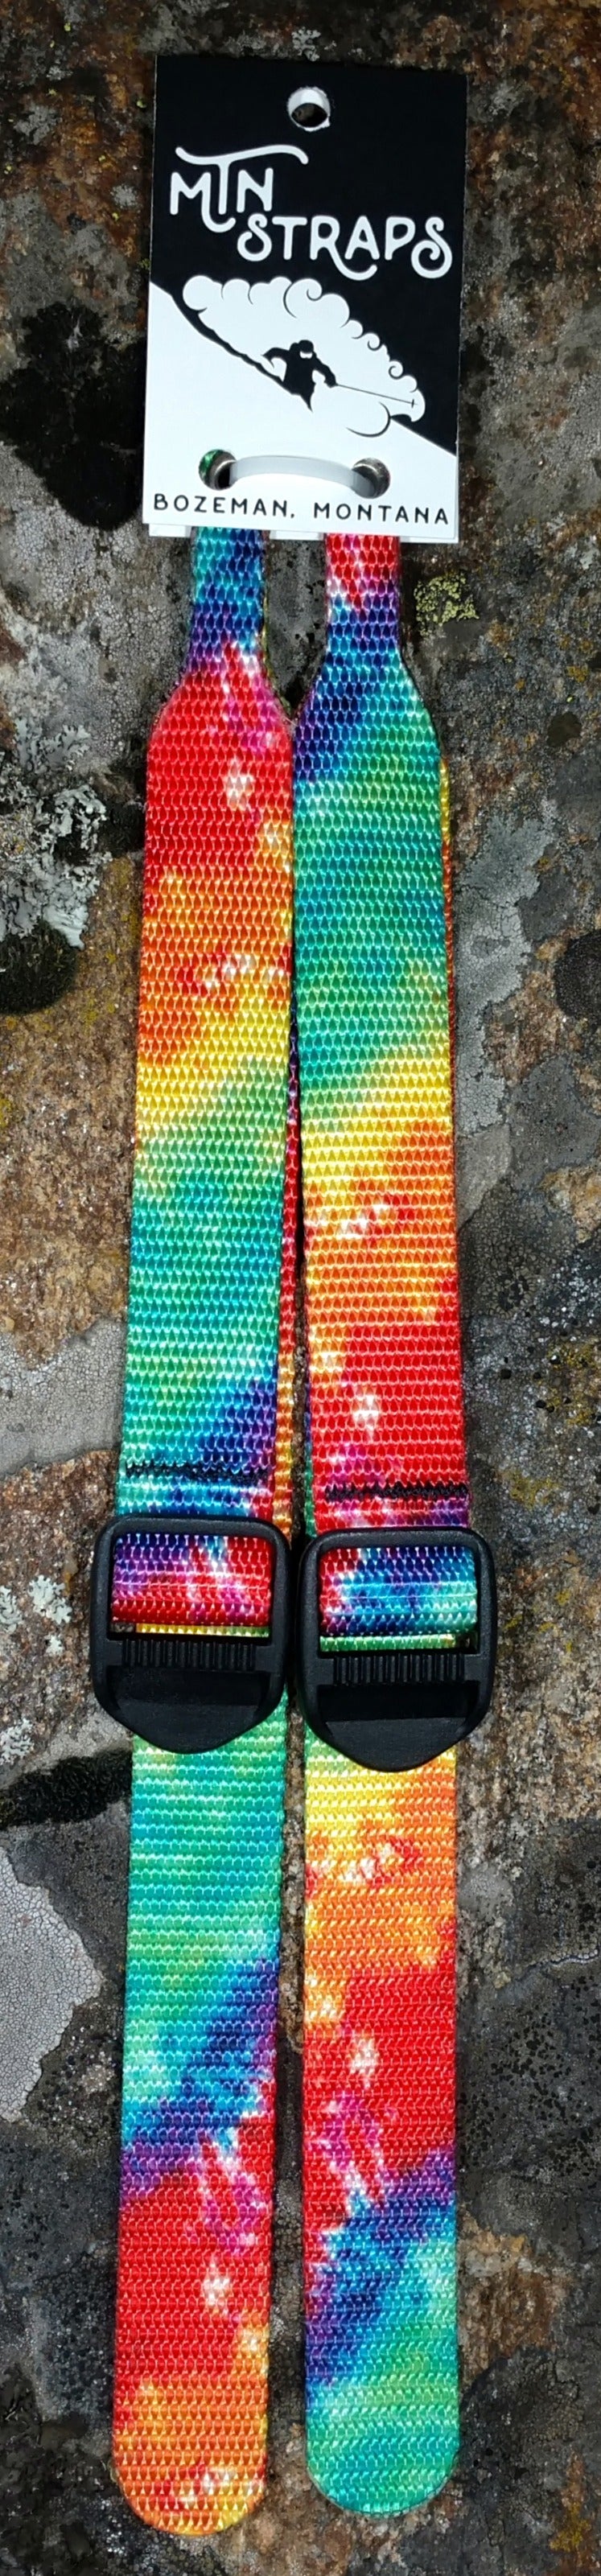 Replacement straps for ski poles. Tye dye